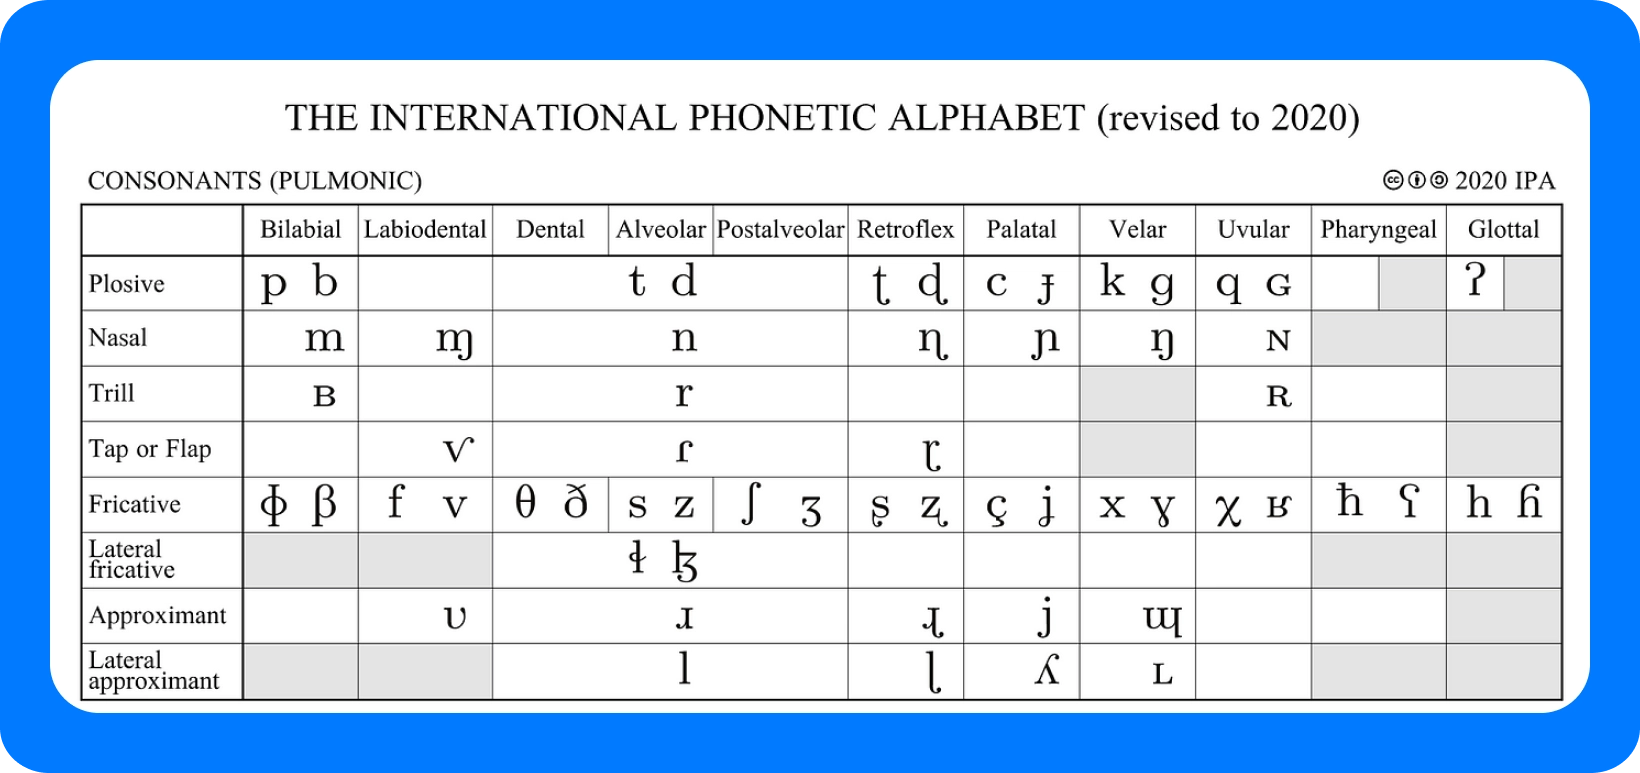 Tabel van het Internationaal Fonetisch Alfabet voor medeklinkers, herzien in 2020, met details over articulatiepunten.